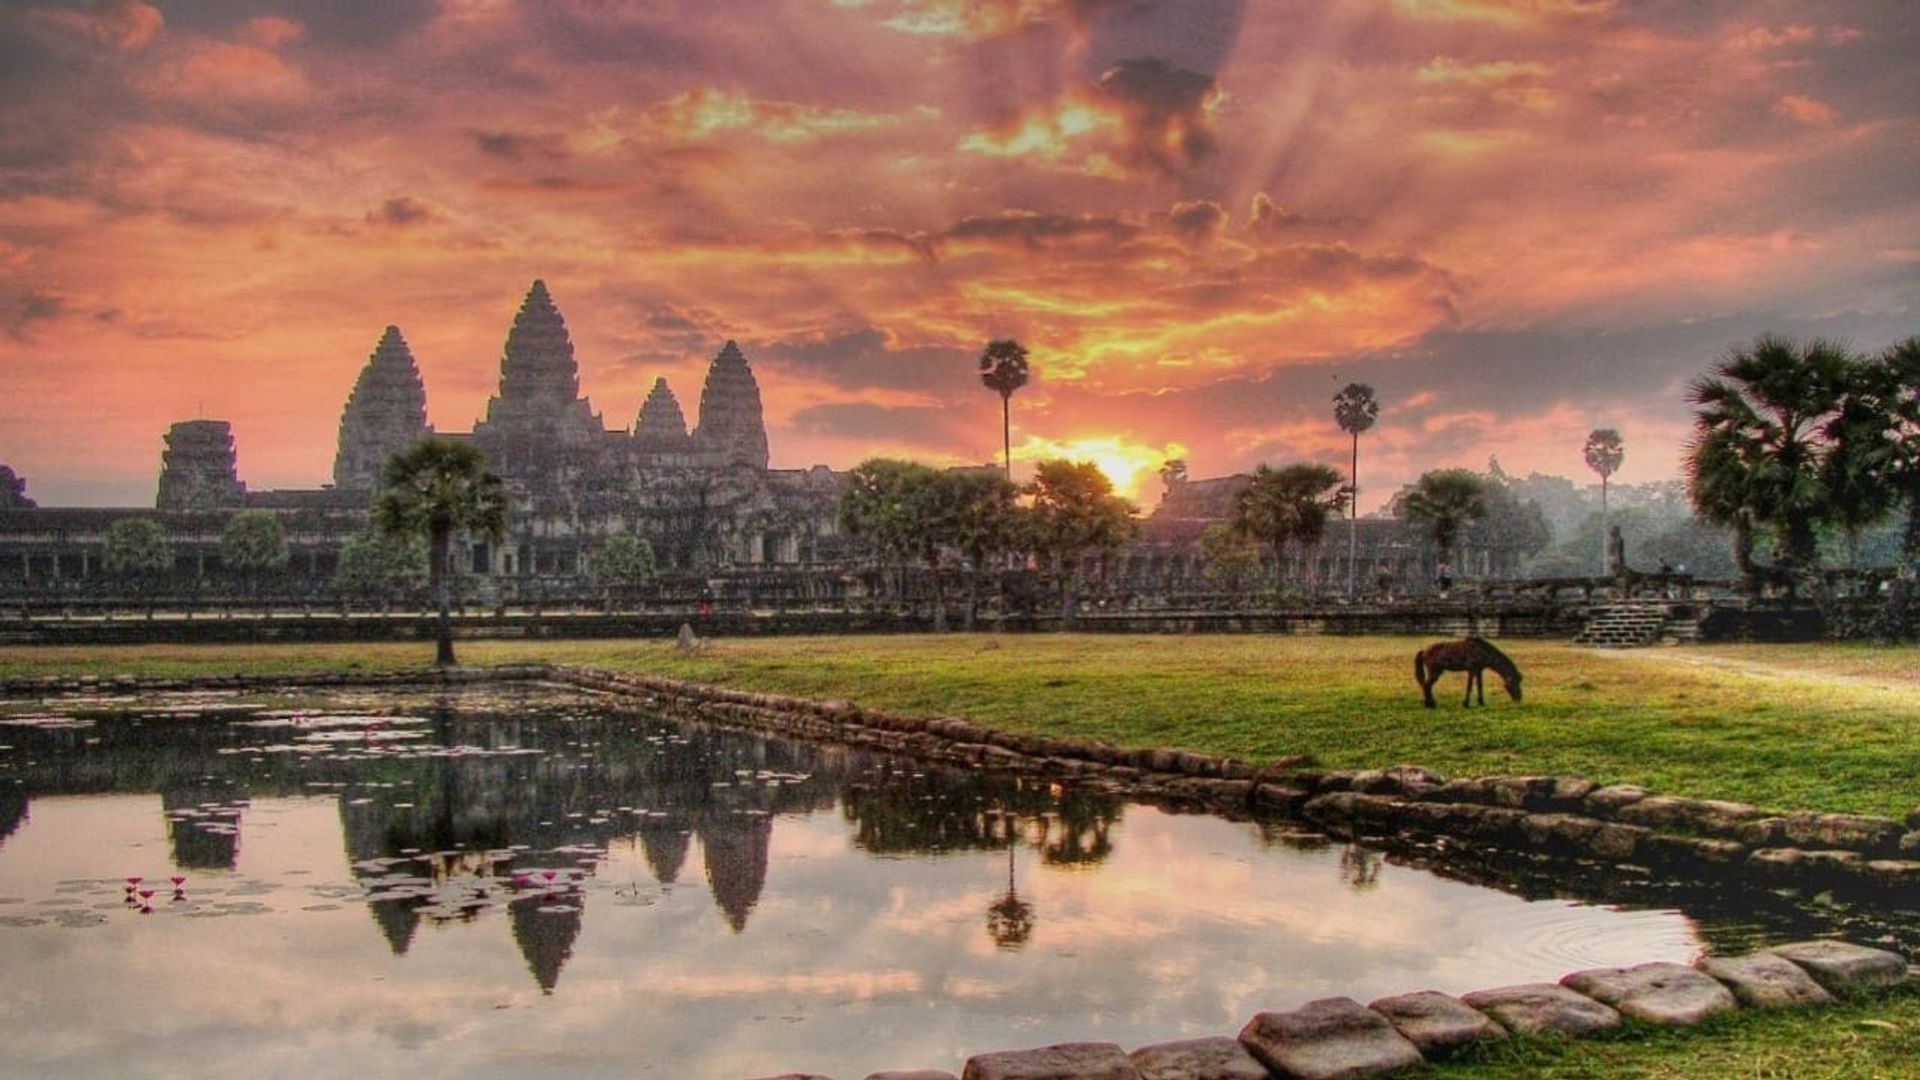 Angkor: Land of the Gods background